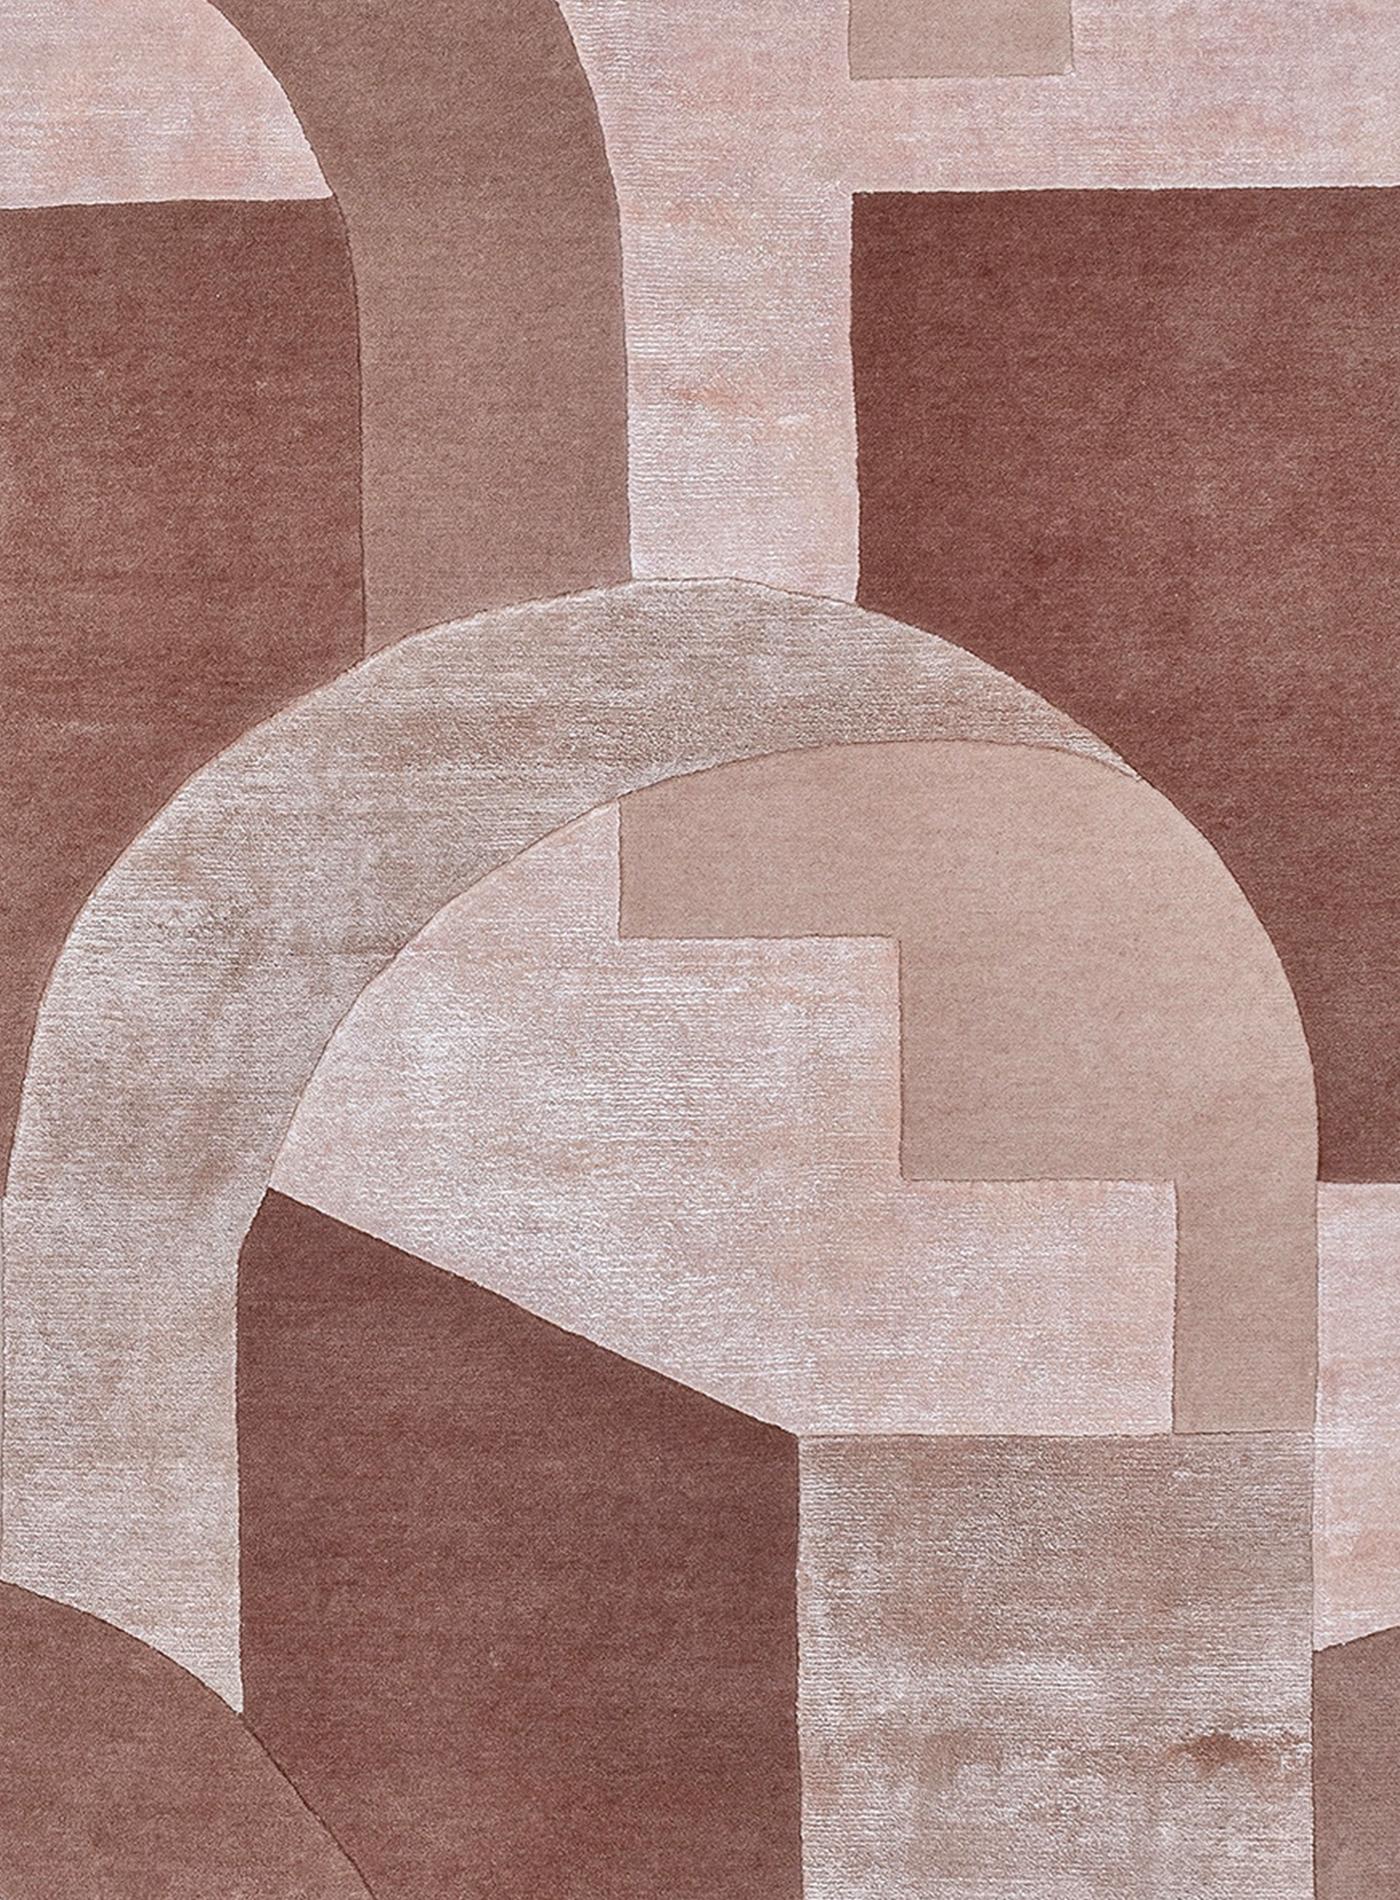 Der Chirico-Teppich ist eine grafische Manifestation der klassischen Architektur, die durch eine zeitgenössische surrealistische Linse neu interpretiert wird. Die Anwendung der charakteristischen Elemente meiner Arbeit in einem komplexen und